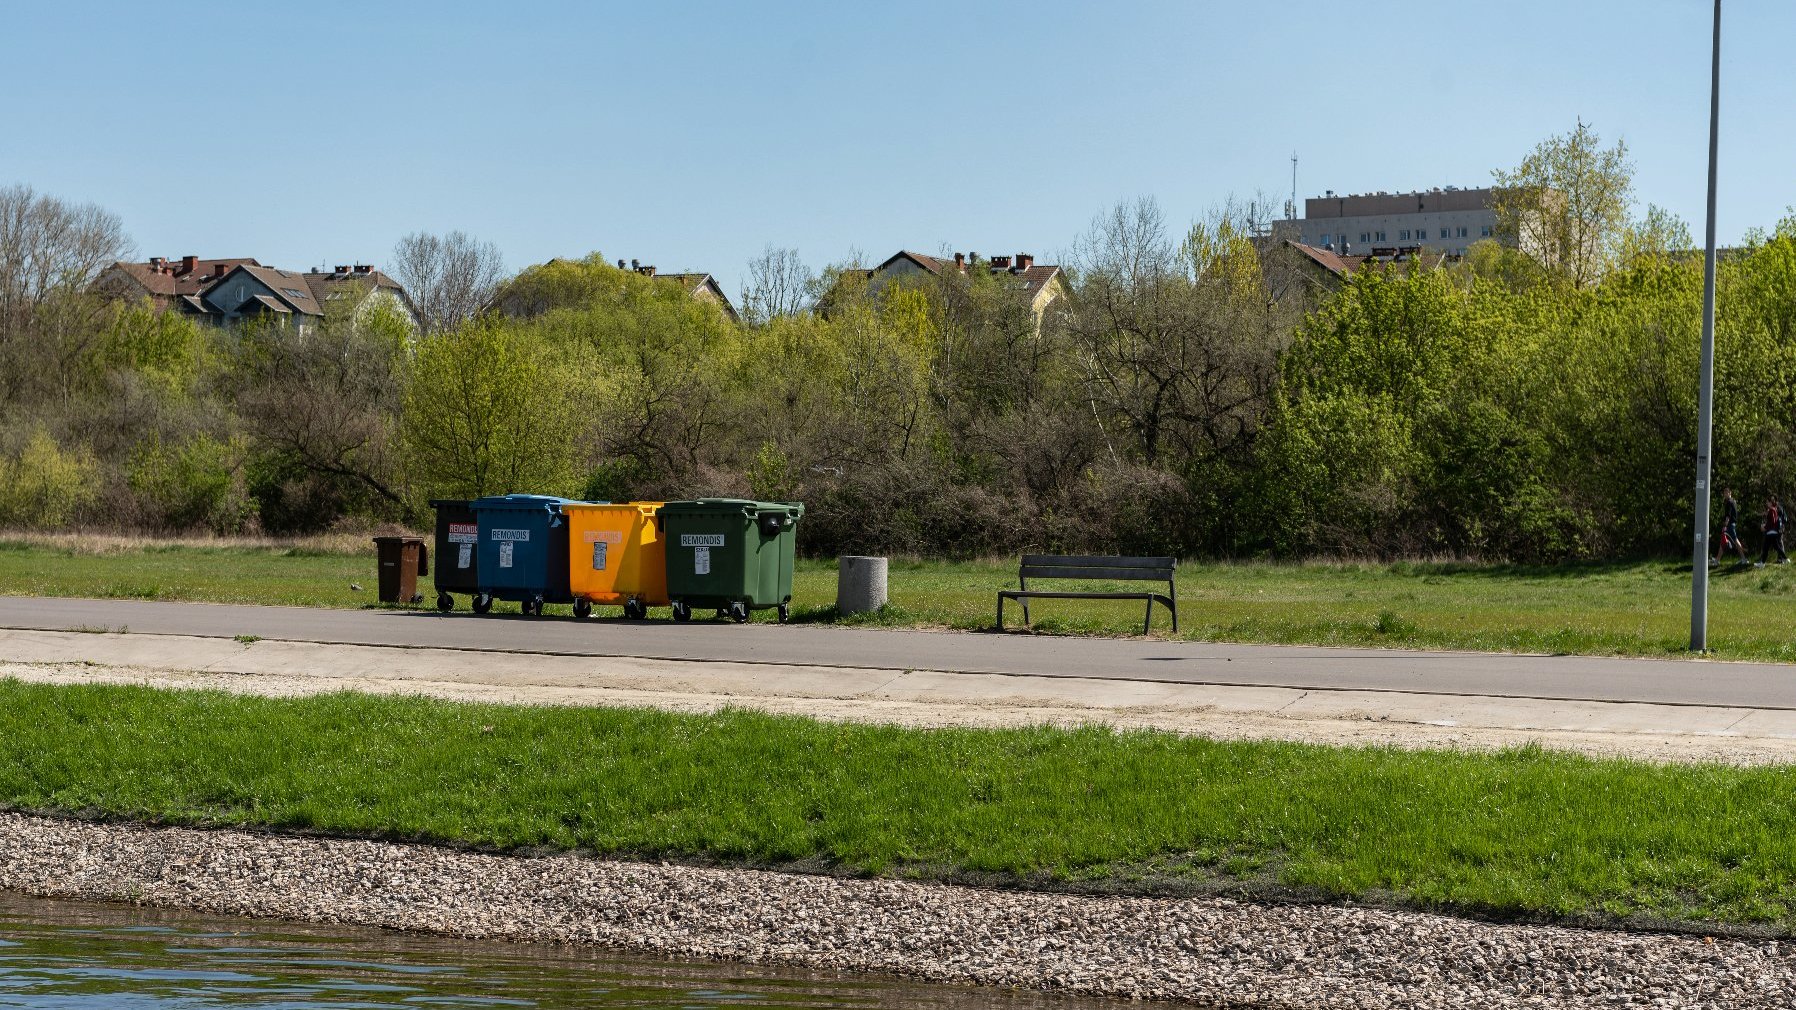 Zdjęcie przedstawia różnokolorowe pojemniki na odpady.